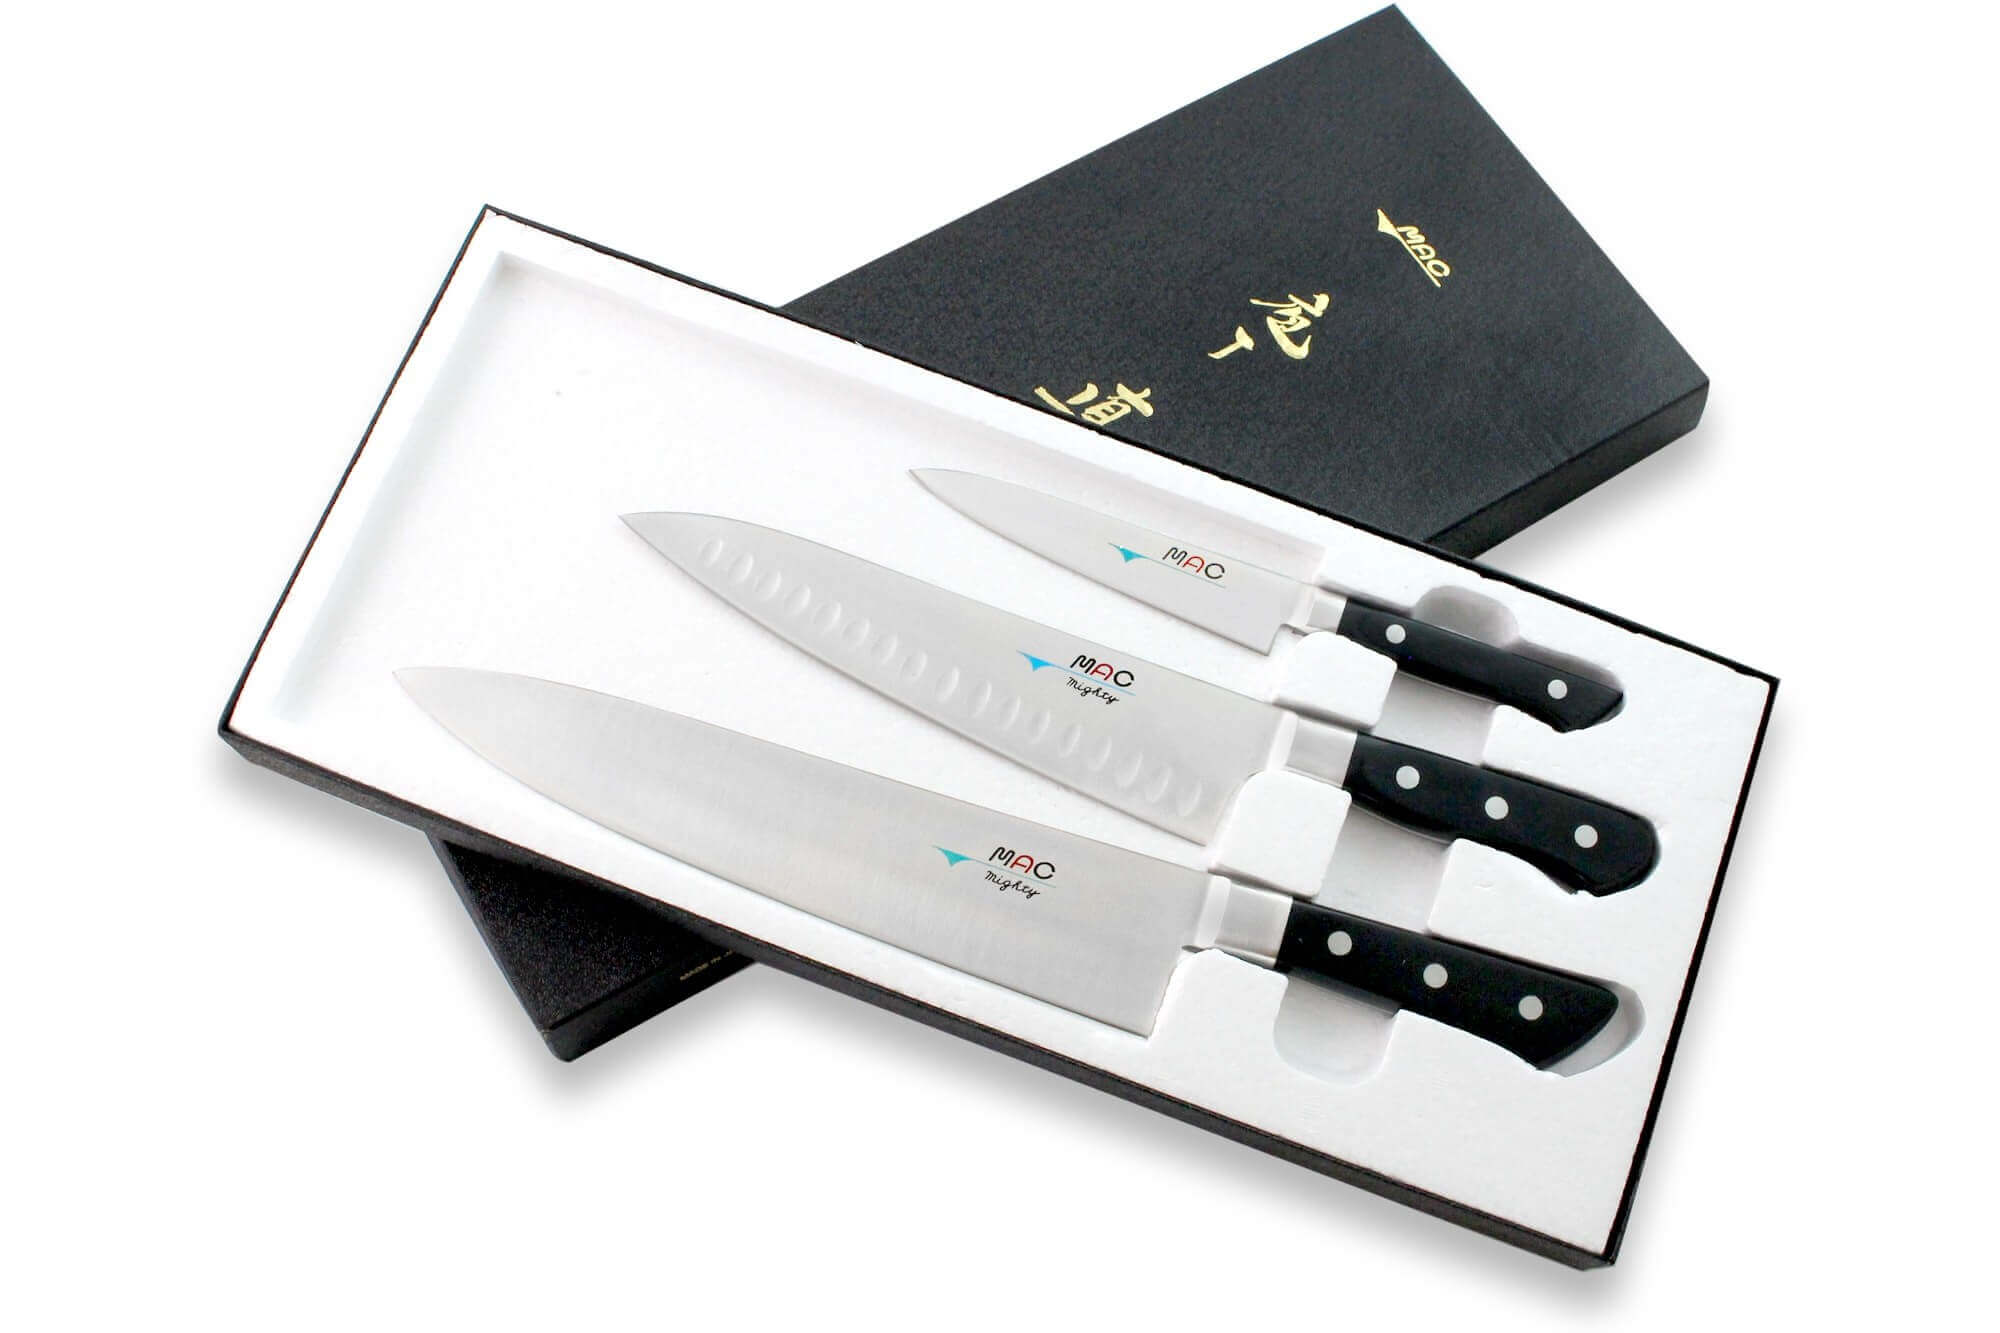 Achat Guide d'Aiguisage pour Couteaux Symétriques moins cher, Aiguiseurs  de couteaux